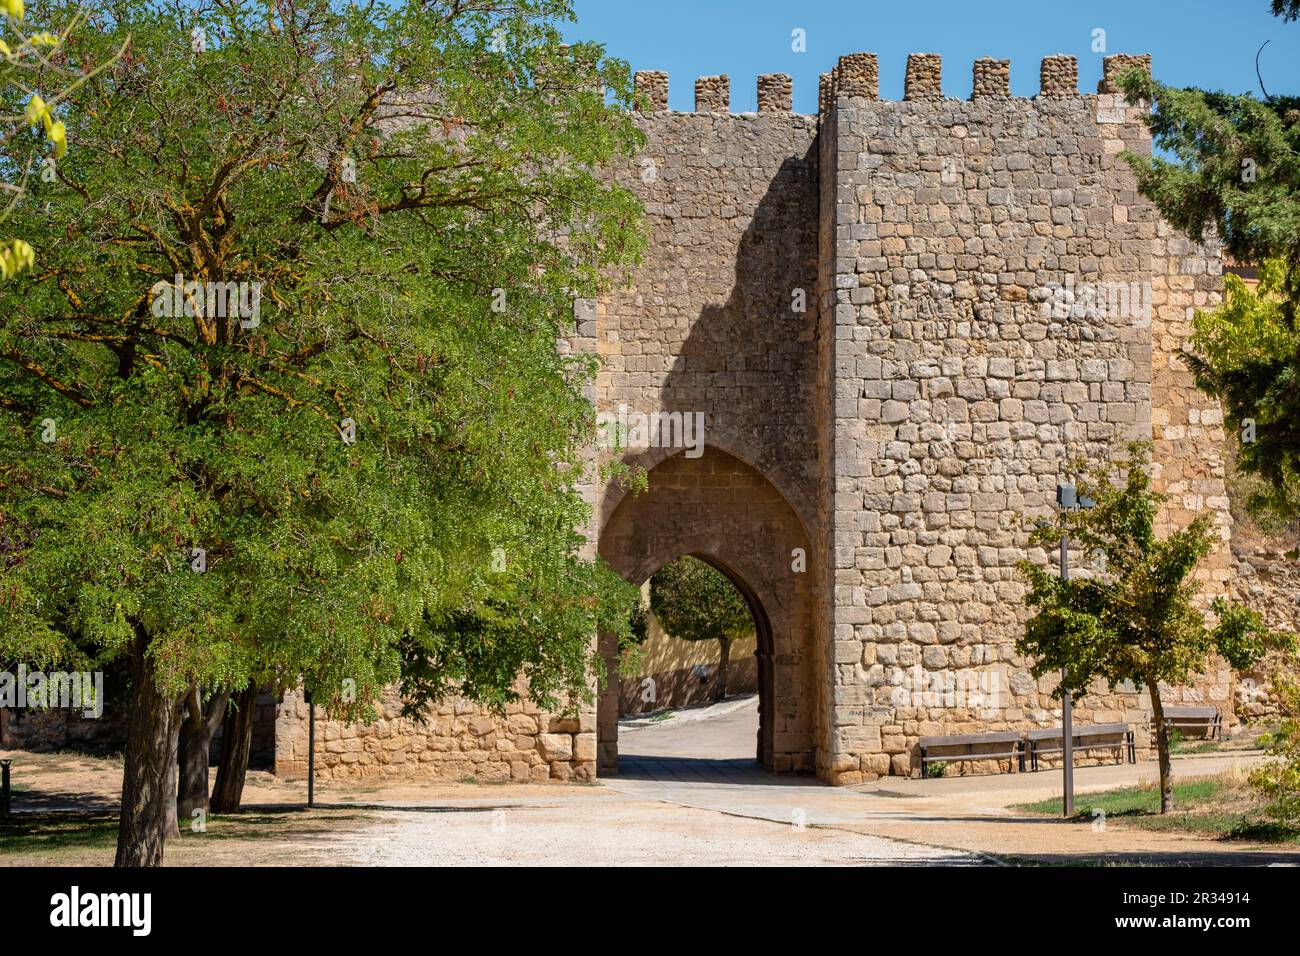 Puerta del Mercado, recinto amurallado de los siglos XII-XIII, Almazán, Soria, comunidad autónoma de Castilla y León, Spain, Europe. Stock Photo